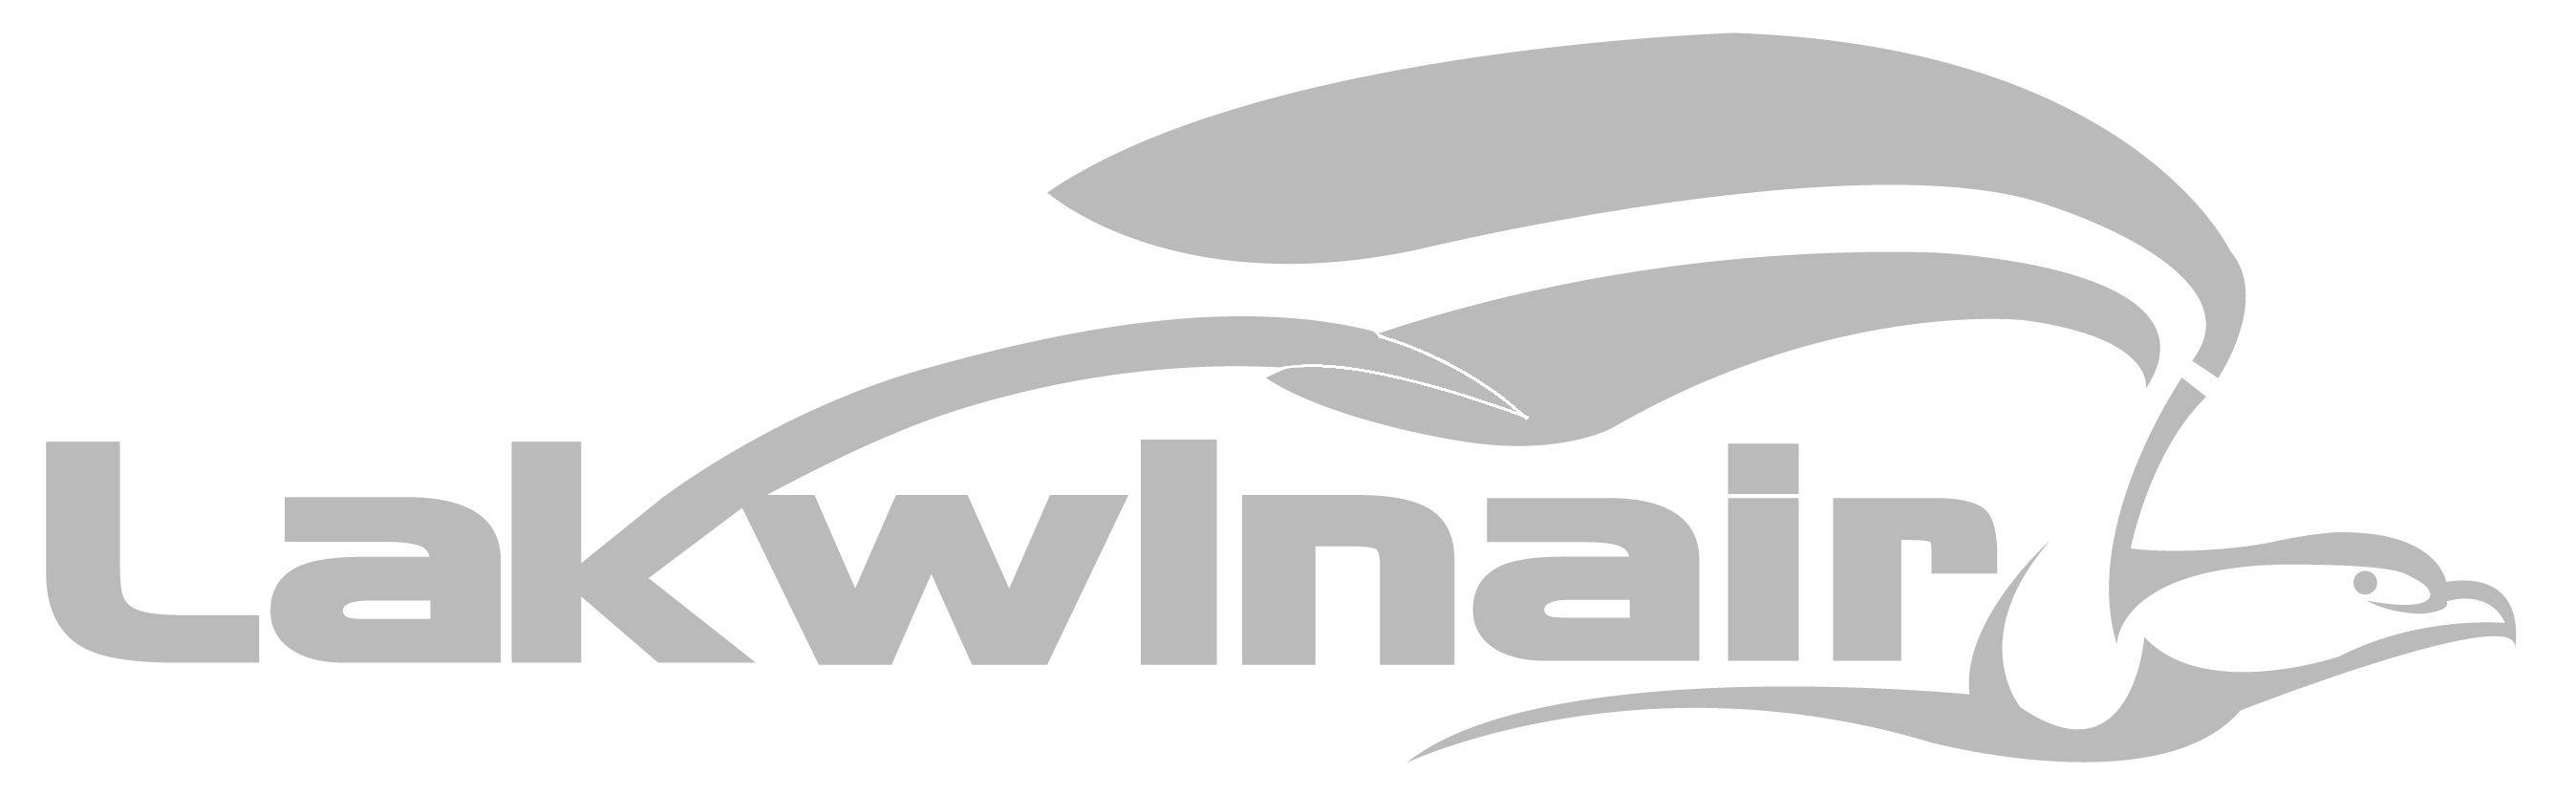 Lakwin Aviation logo